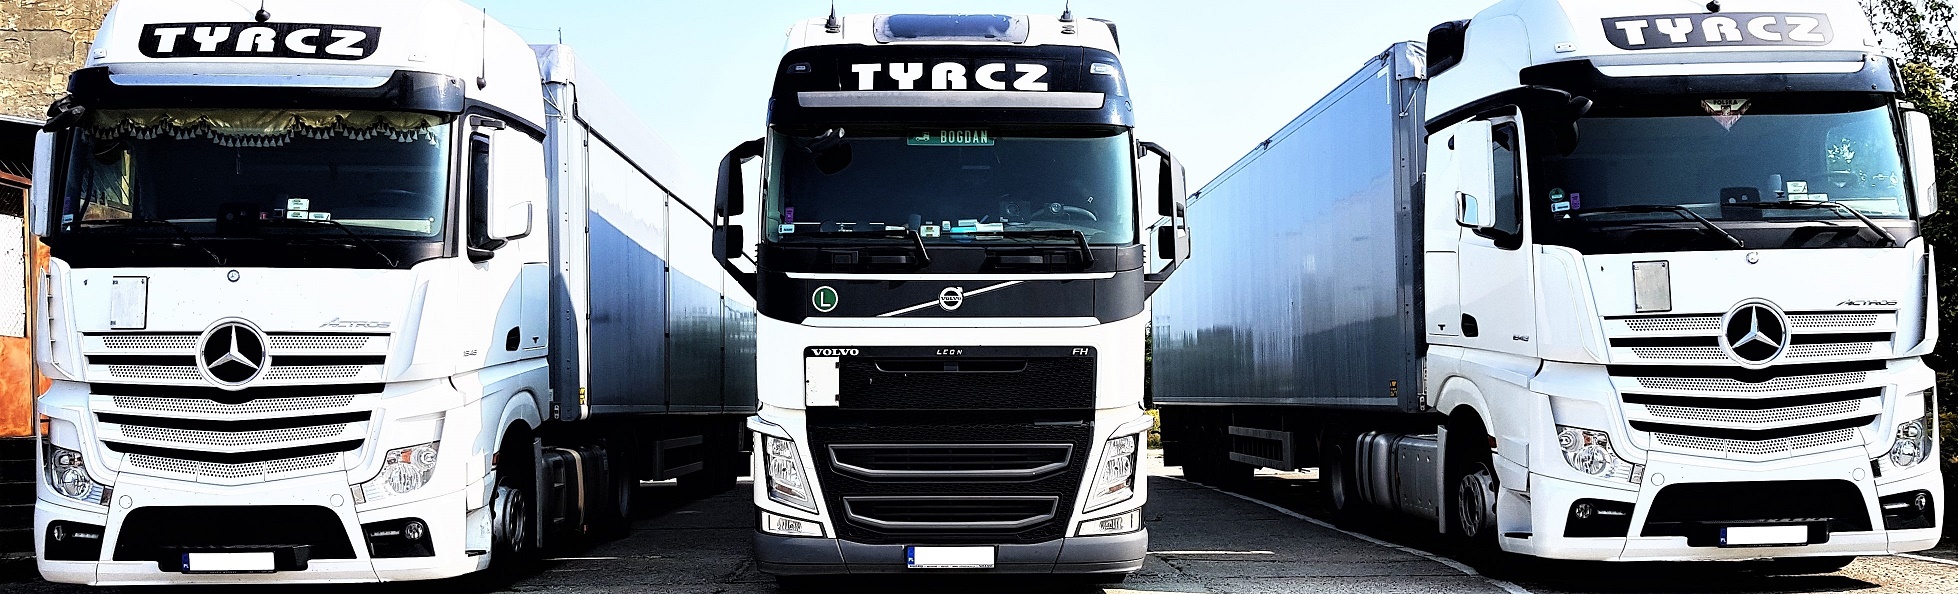 TYRCZ Transport - Międzynarodowy transport ciężarowy